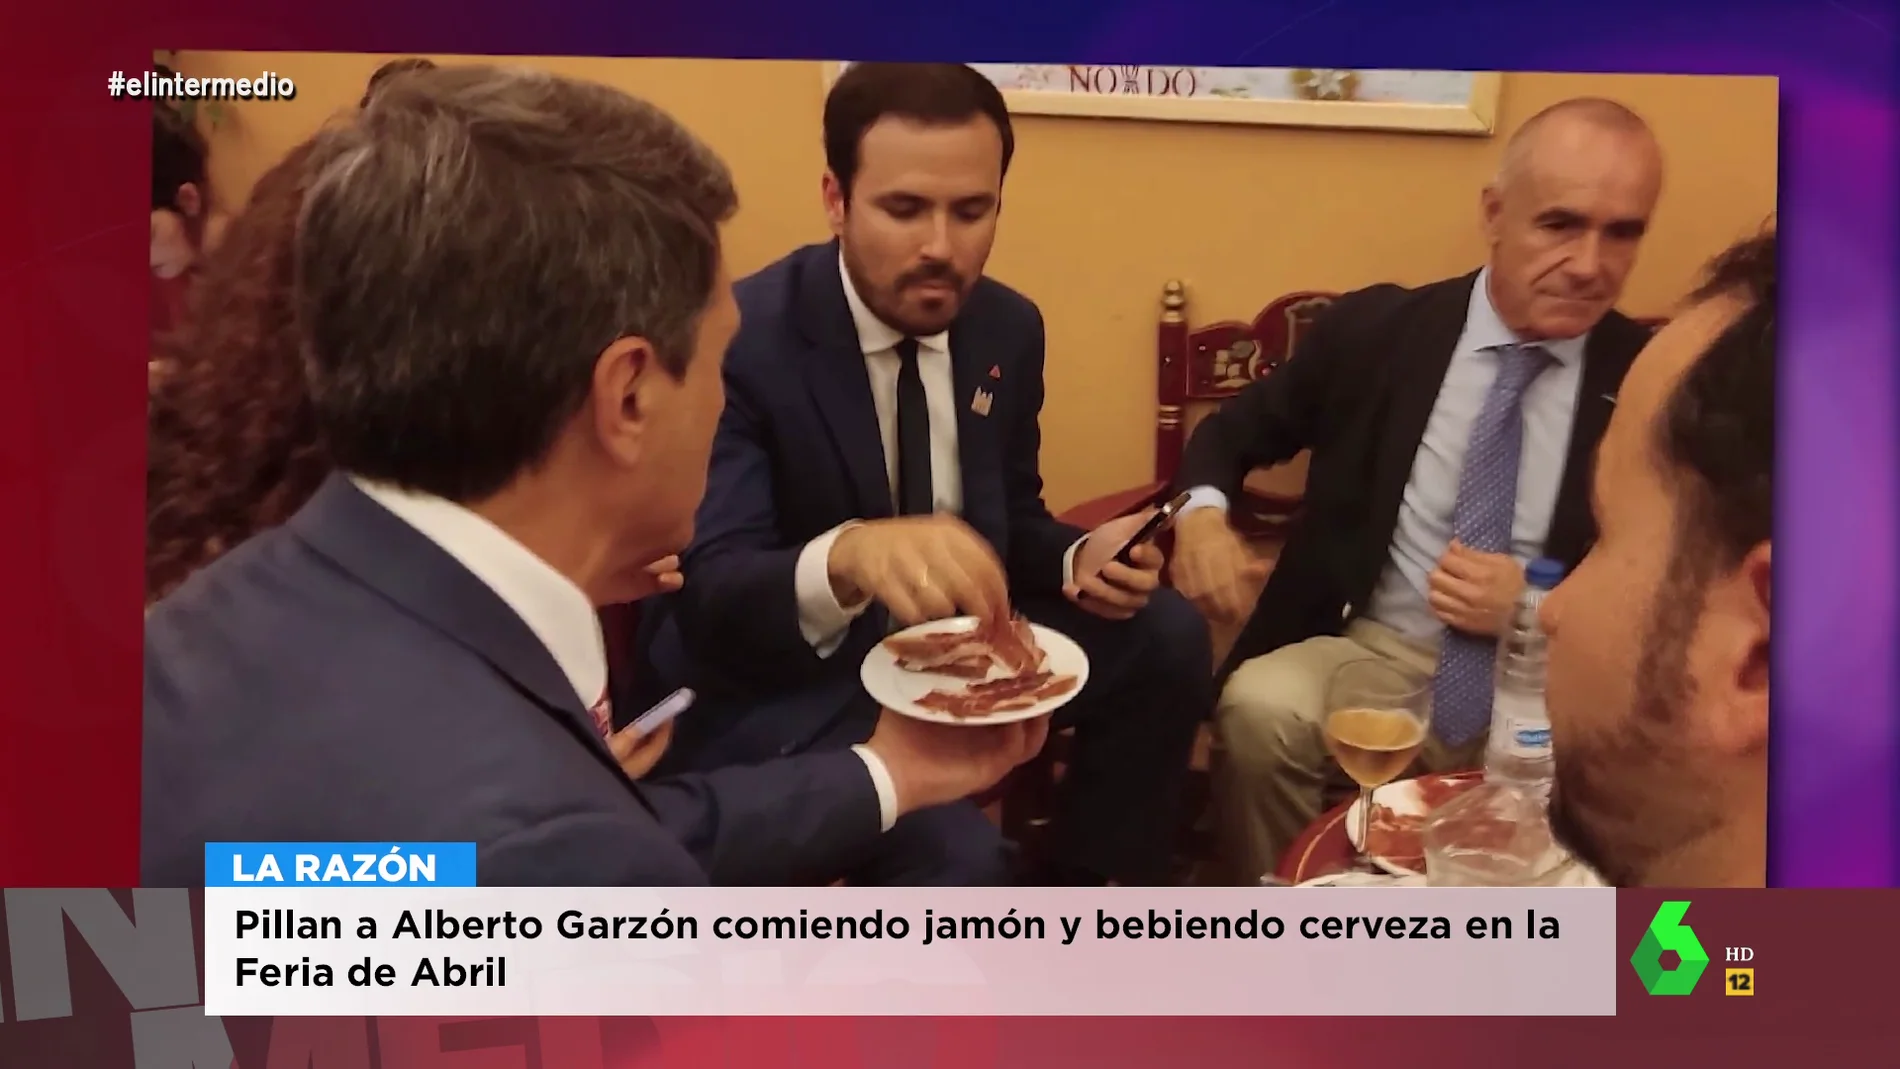 La ironía de Dani Mateo con los haters de Alberto Garzón por comer jamón: "Un comunista debe alimentarse de cartón"